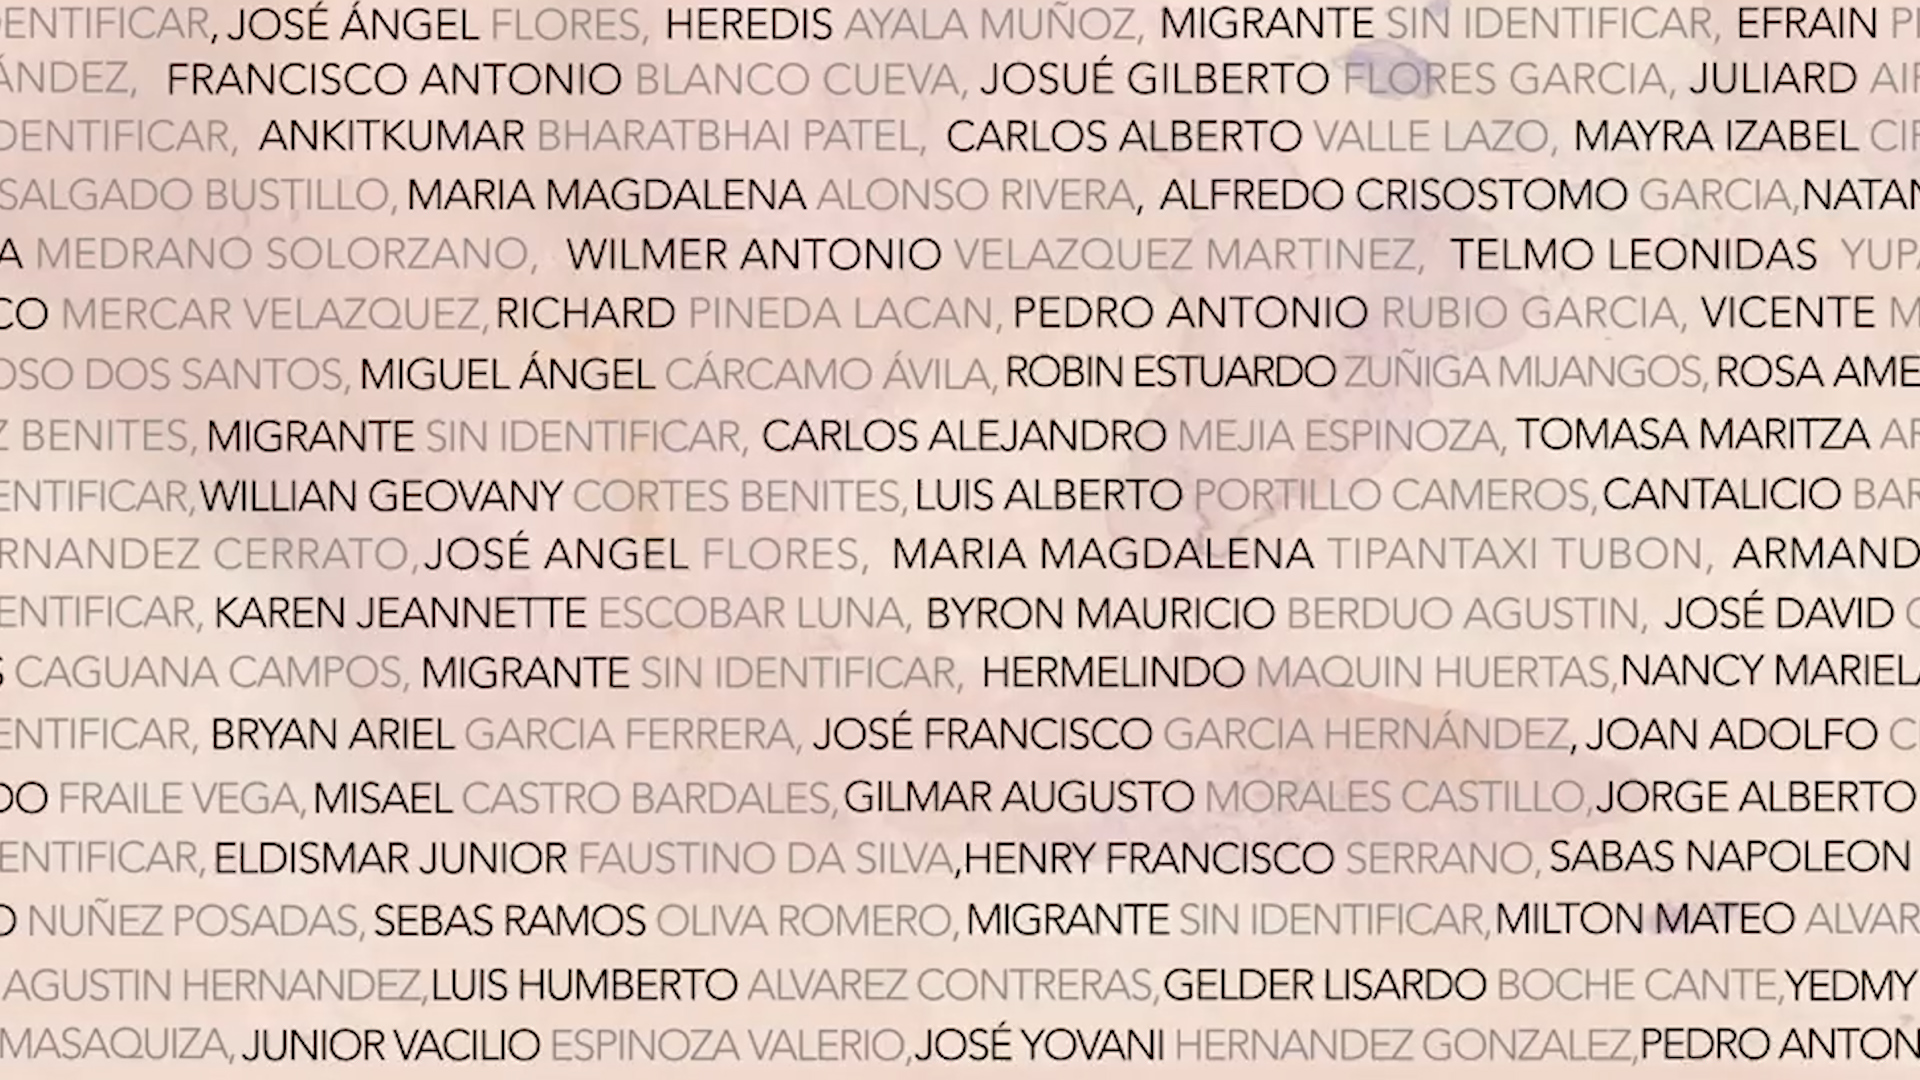 Nombres de los migrantes que fueron asesinado en la conocida "Masacre de San Fernando".